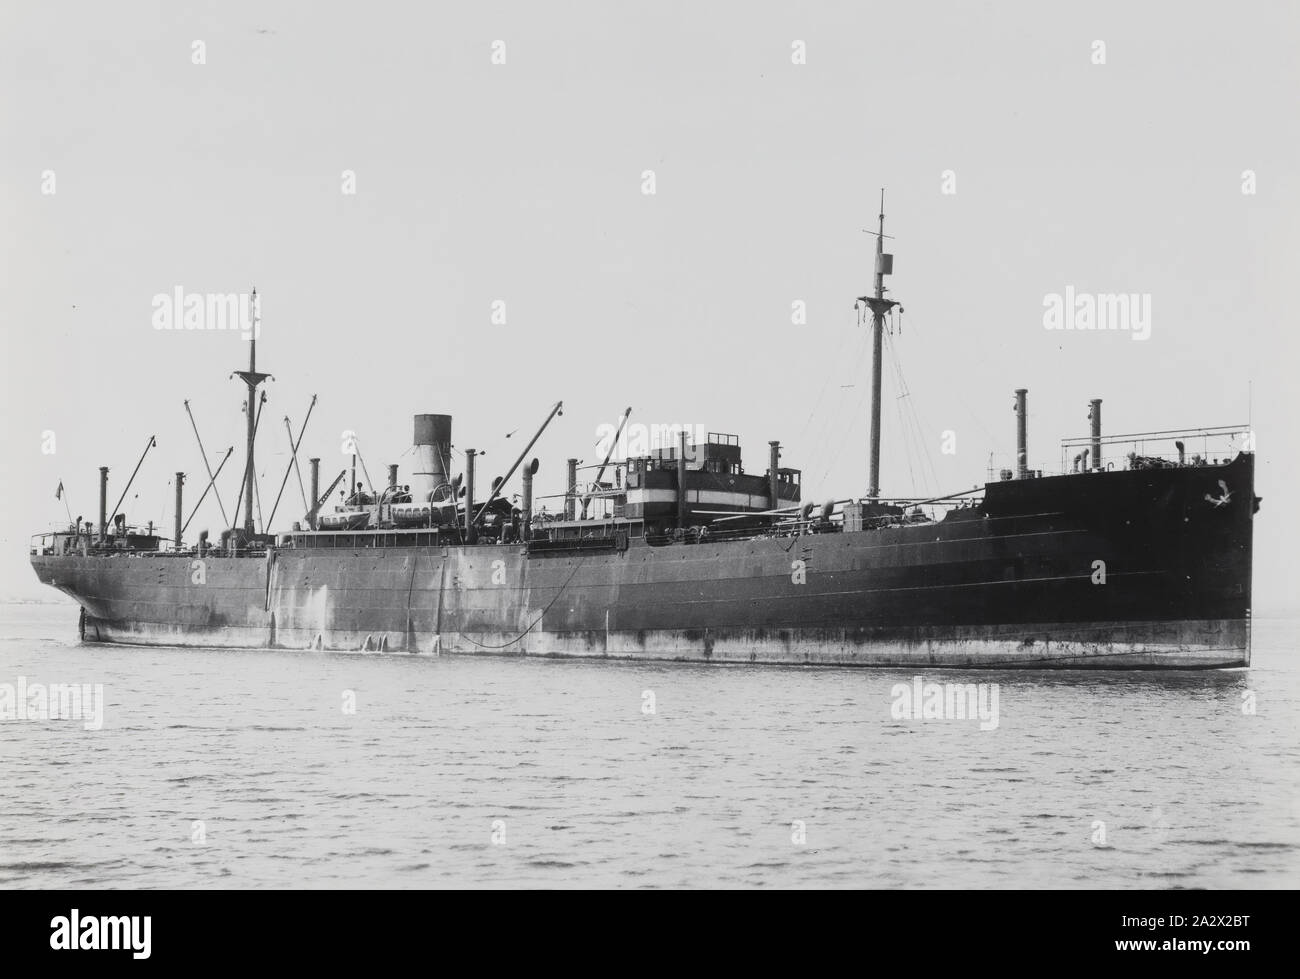 Steam cargo ship фото 109